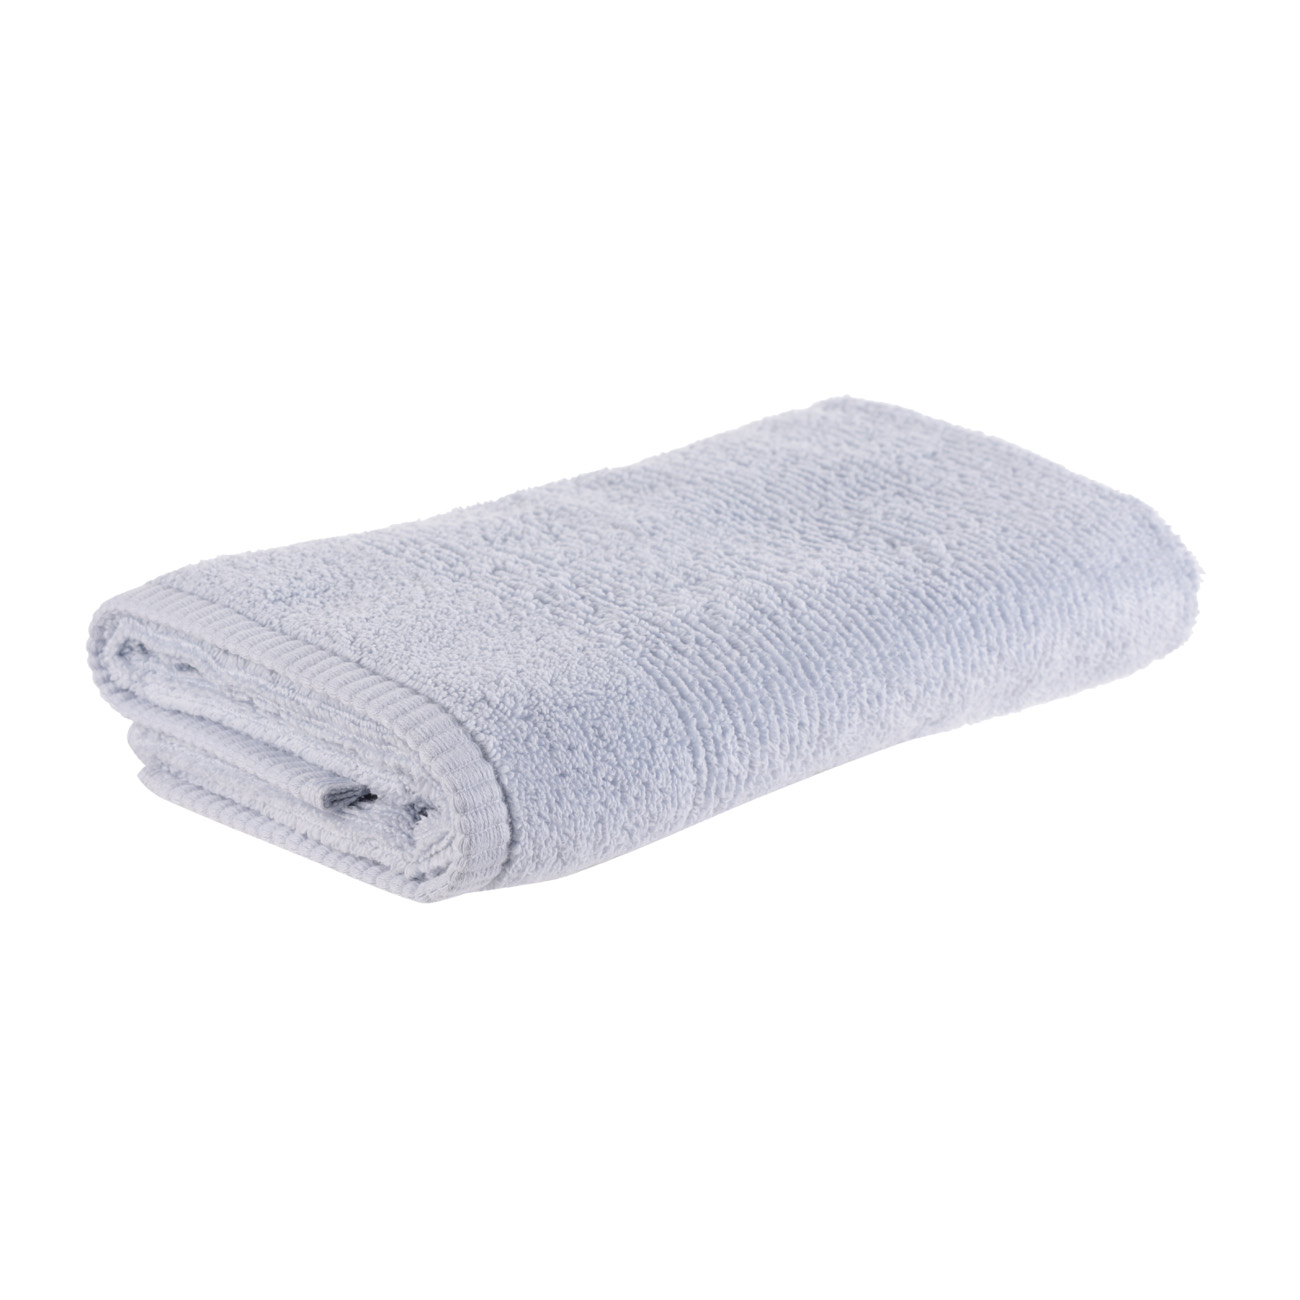 Towel, 50x90 cm, cotton, blue, Terry cotton изображение № 3